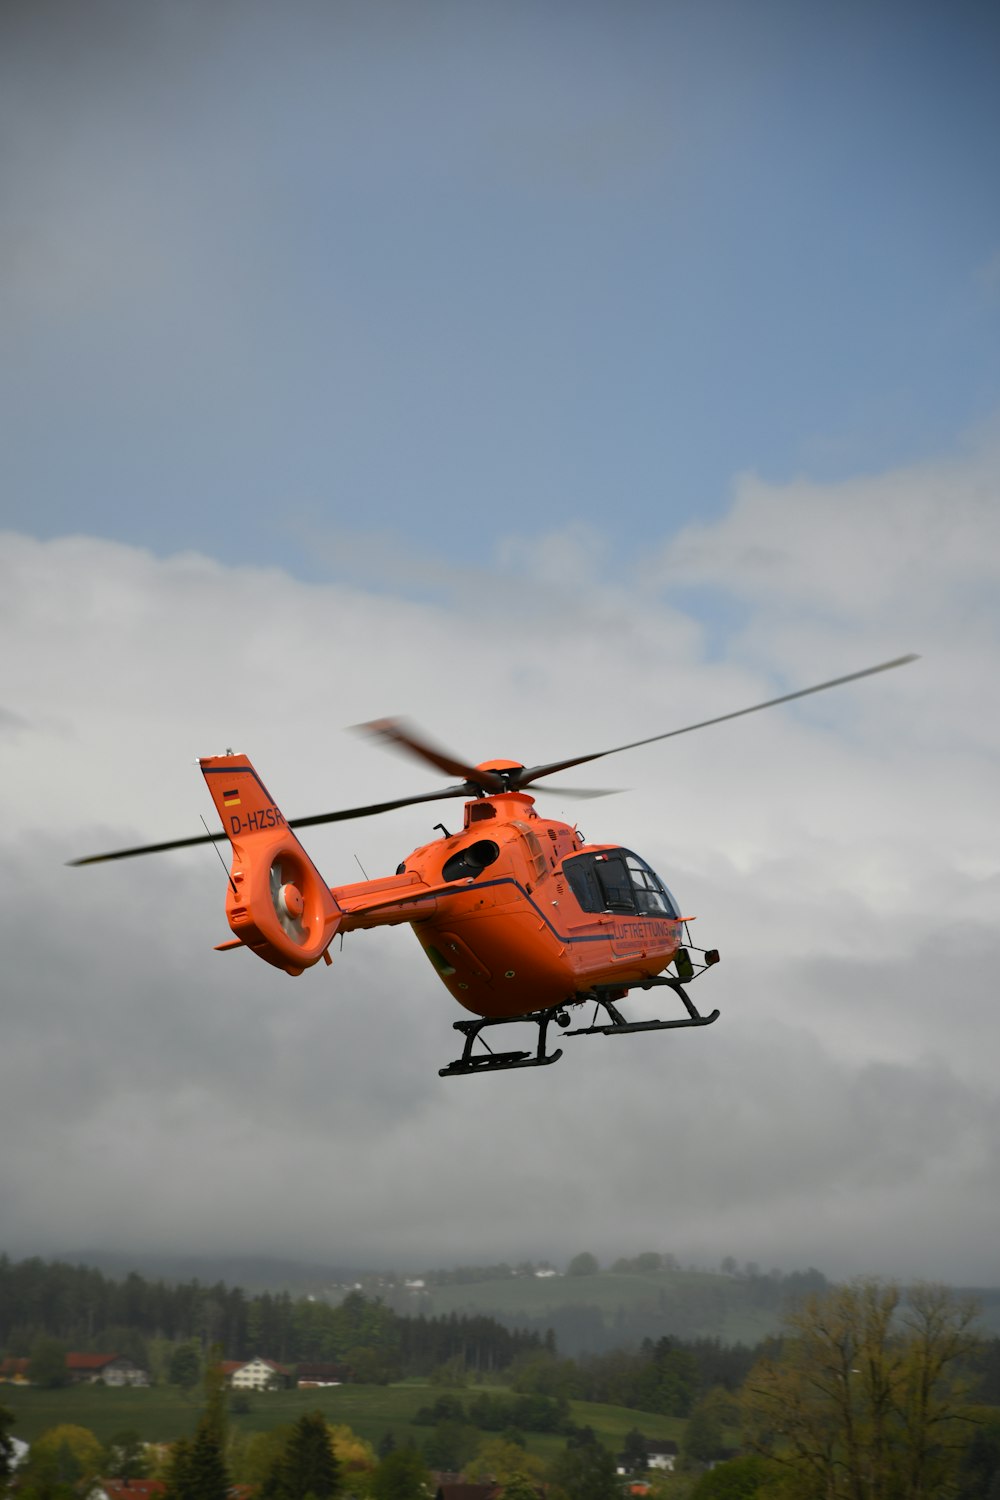 曇り空を飛ぶオレンジ色のヘリコプター